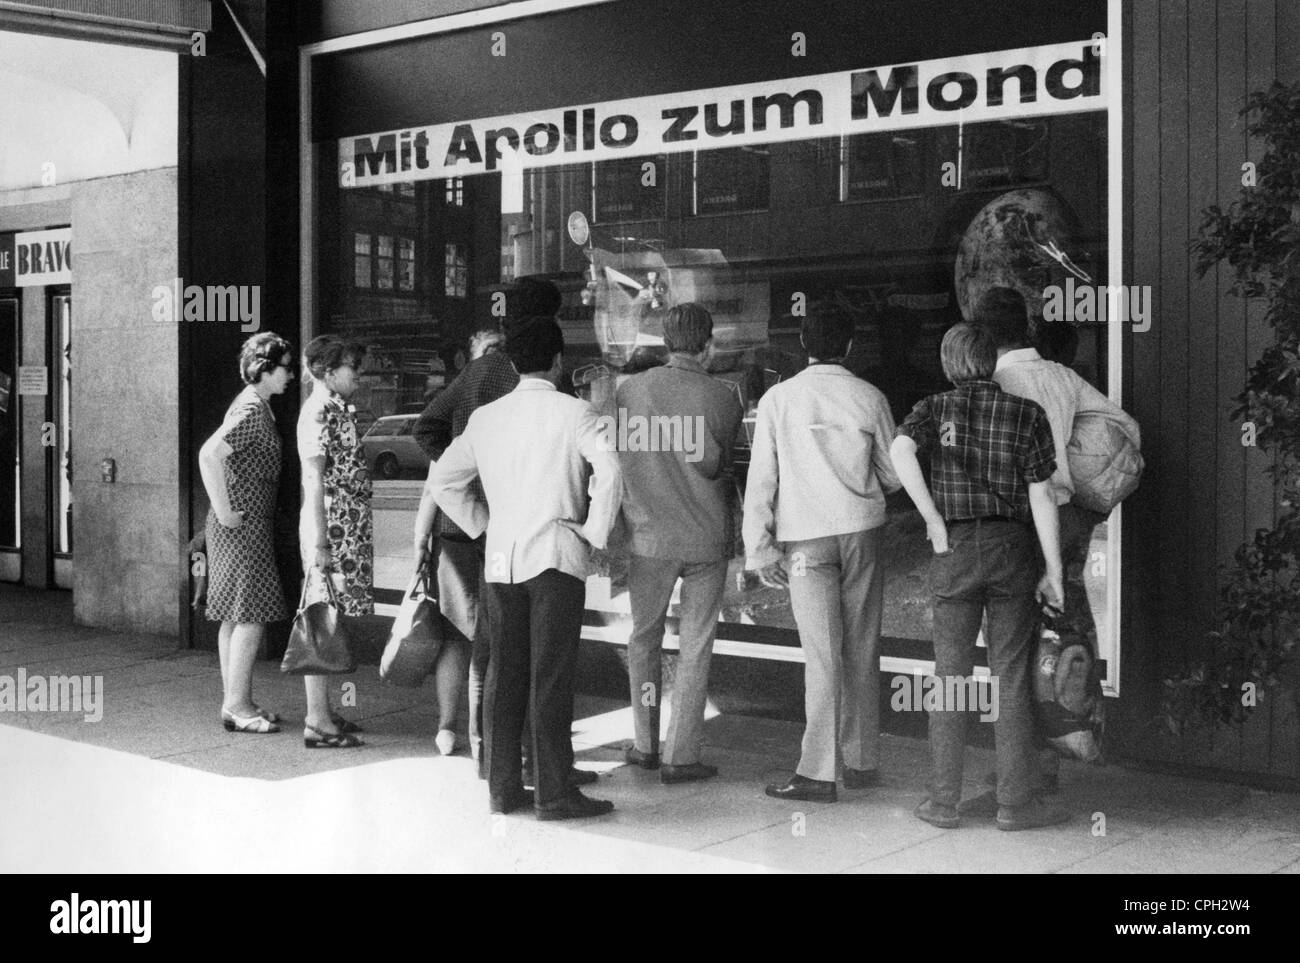 Raumfahrt, Missionen, Apollo 11, Start, Leute, die den Start im TV im Schaufenster beobachten, Hamburg, 16.7.1969, 'mit Apollo zum Mond', Zusatzrechte-Clearences-nicht verfügbar Stockfoto